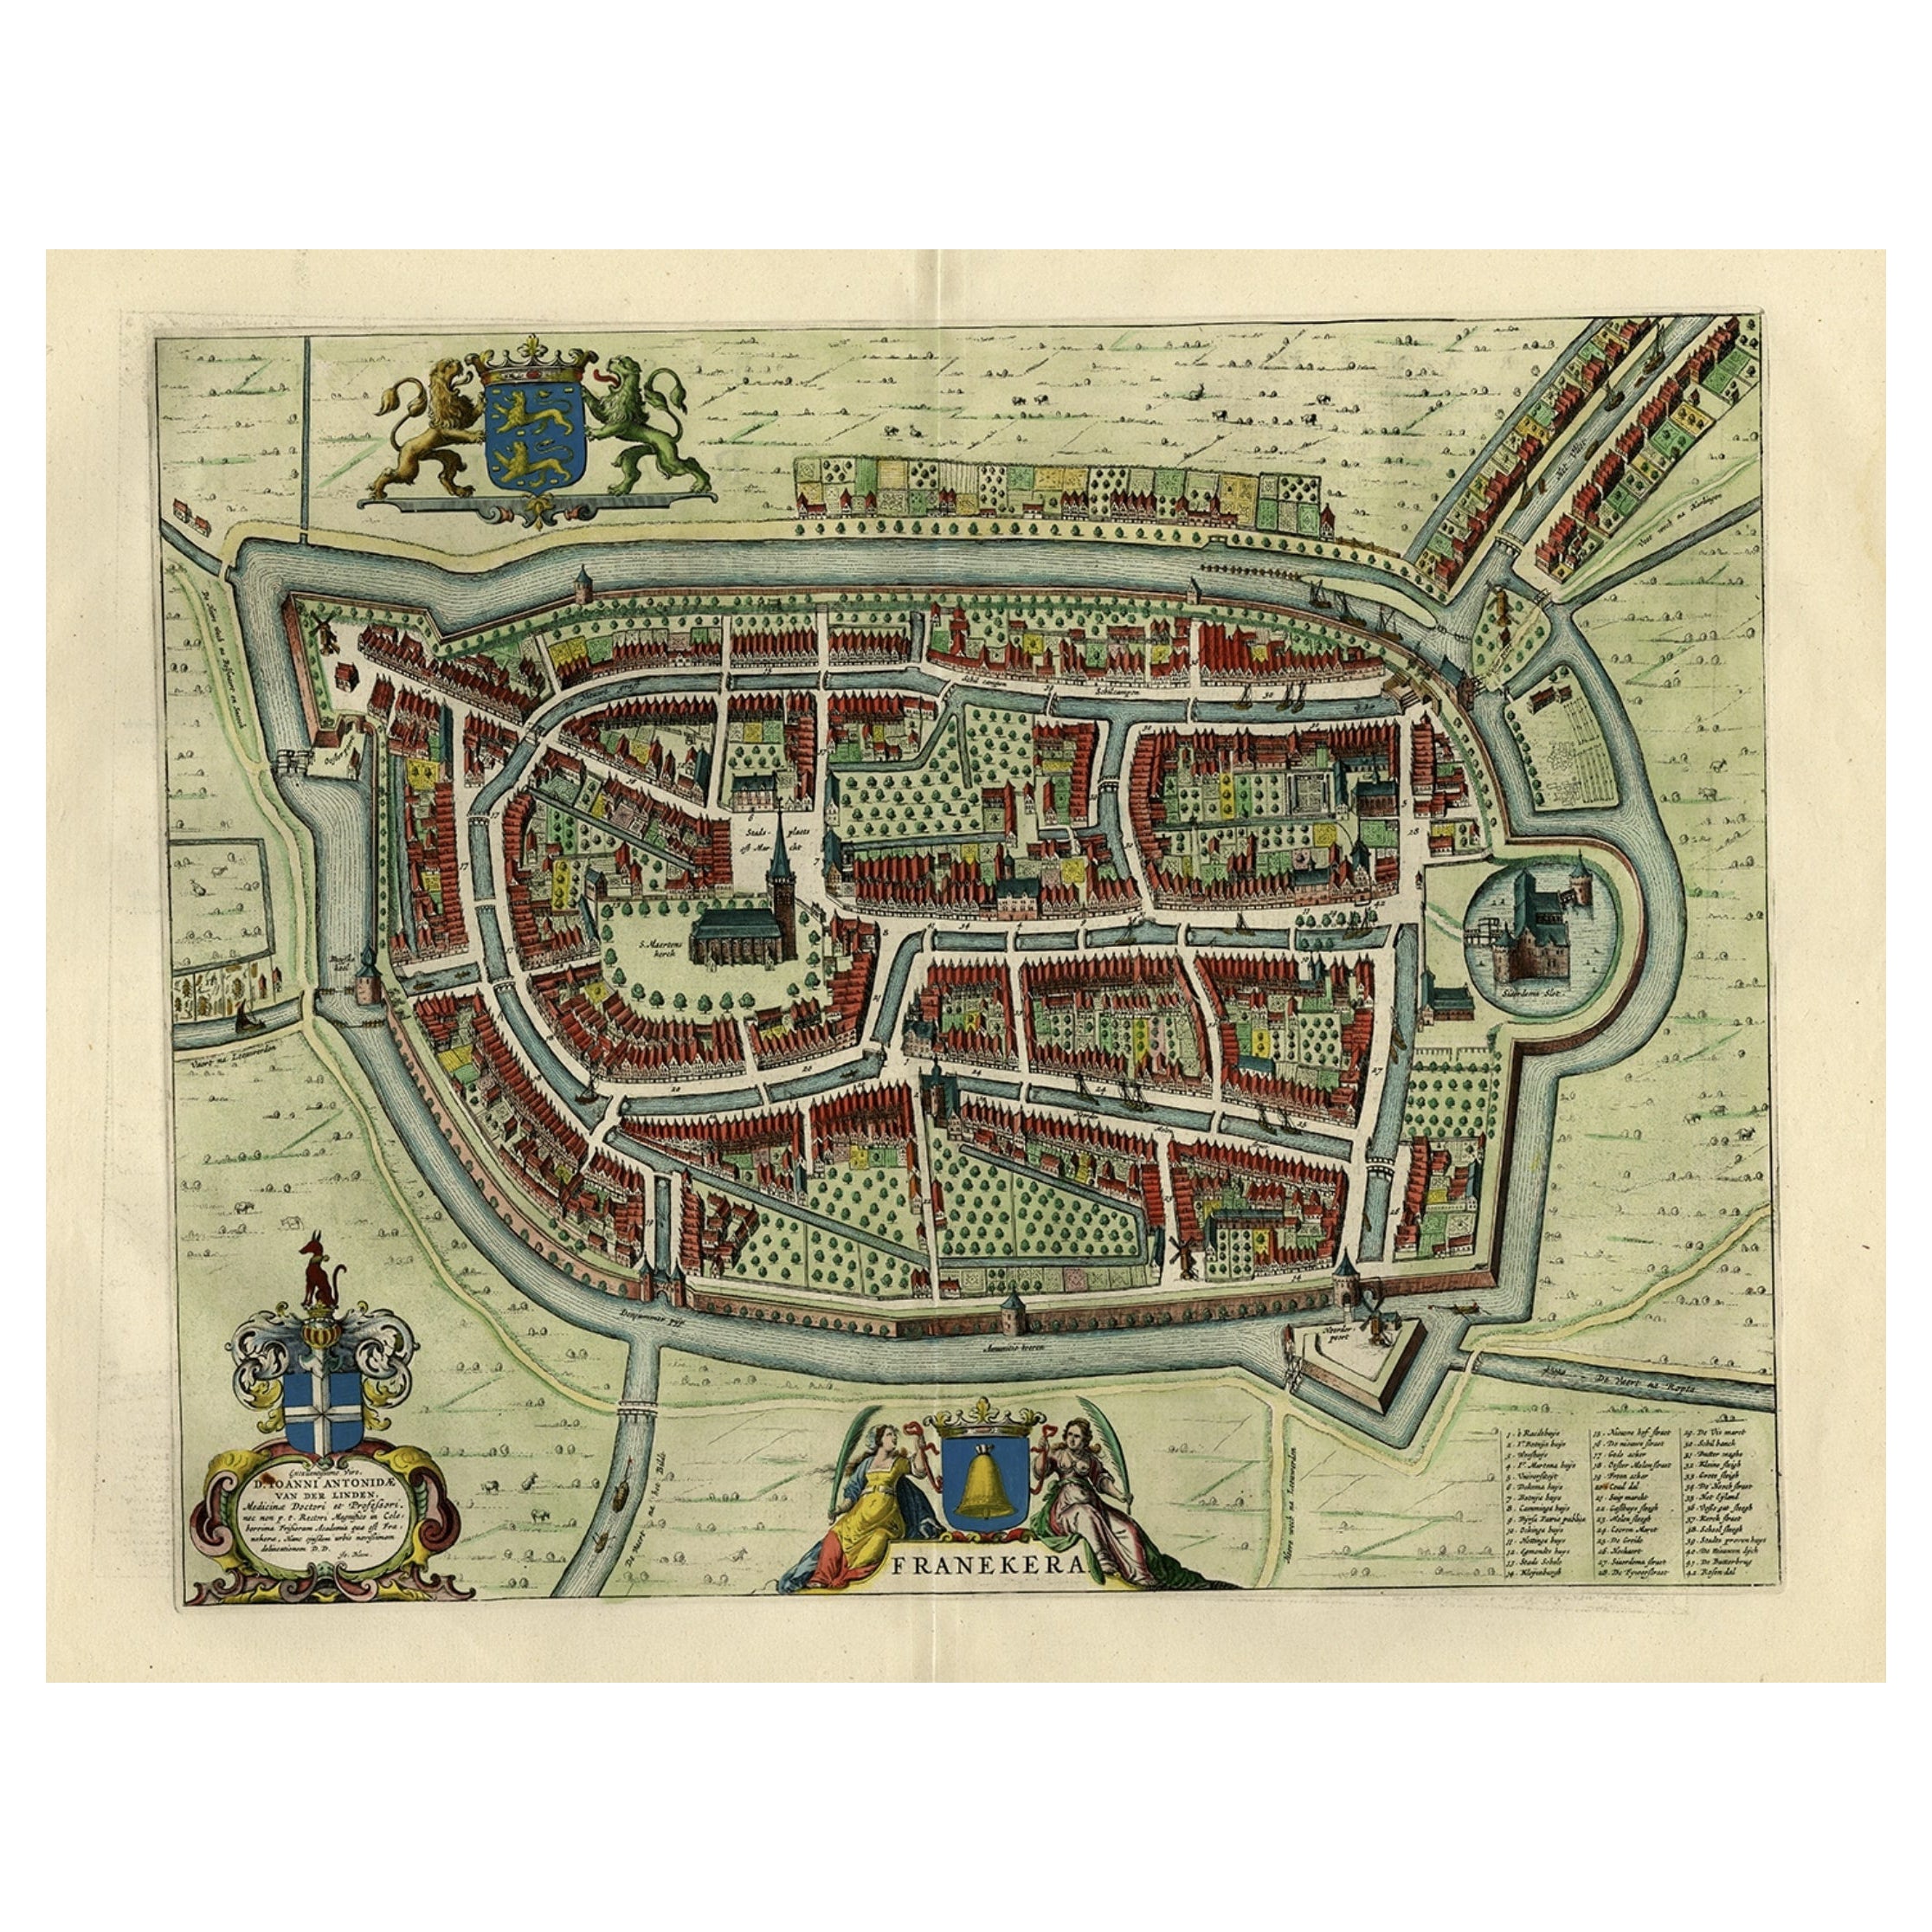 Ancienne carte de la ville de Franeker, Friesland, réalisée par le célèbre ébéniste Blaeu, 1652